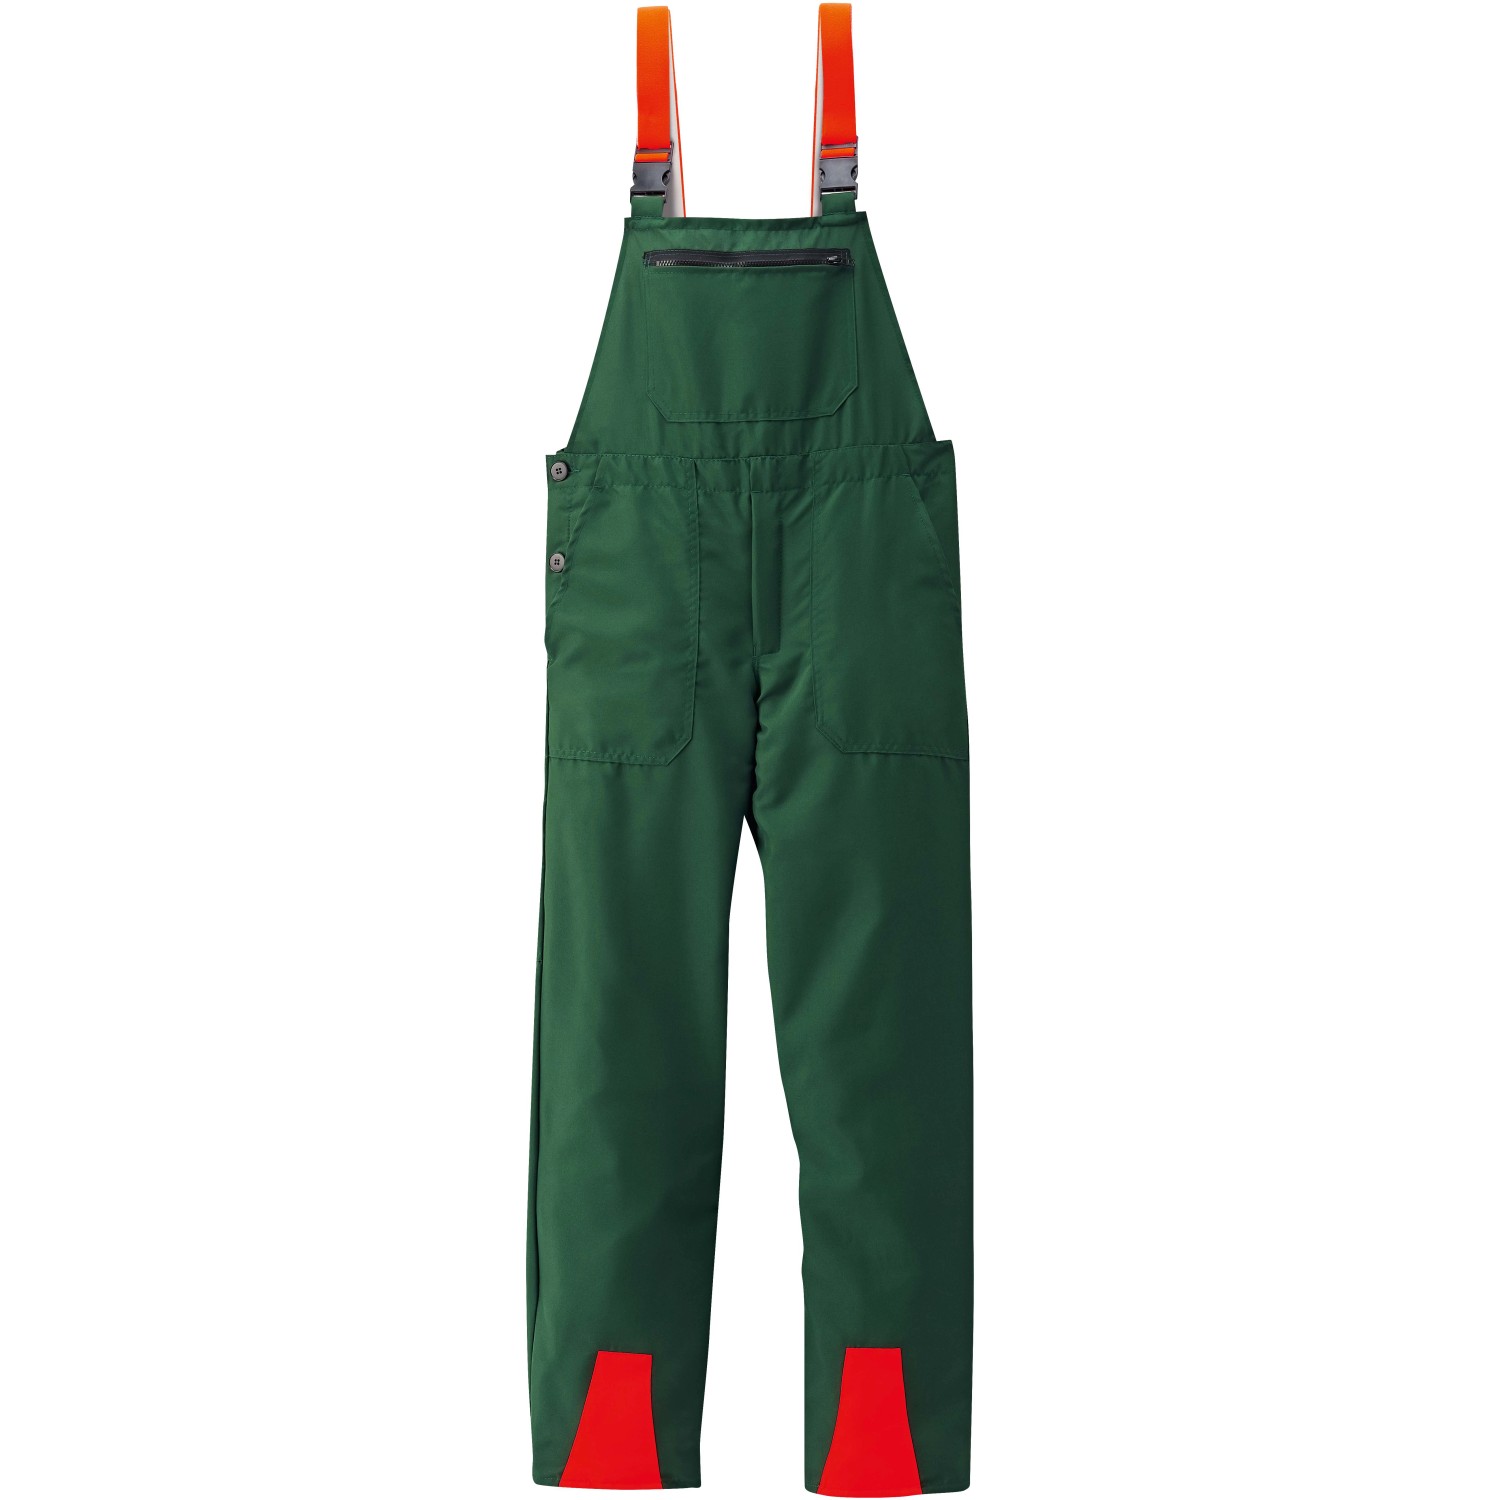 Schnittschutz-Latzhose Basic Grün-Orange Gr. 52 von Scheibler workwear